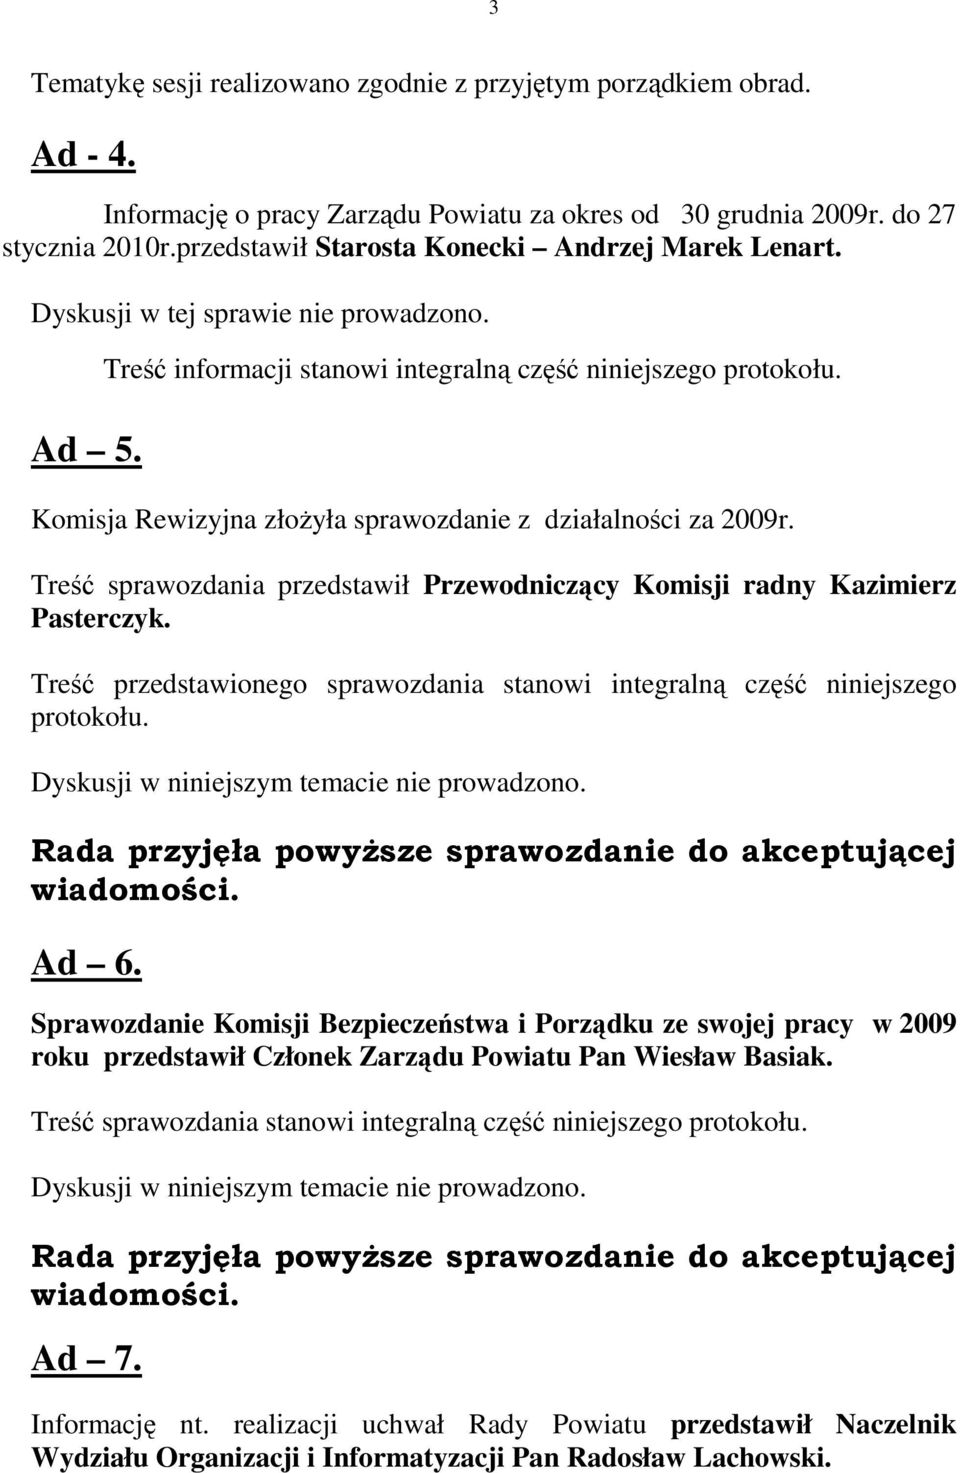 Komisja Rewizyjna złoŝyła sprawozdanie z działalności za 2009r. Treść sprawozdania przedstawił Przewodniczący Komisji radny Kazimierz Pasterczyk.